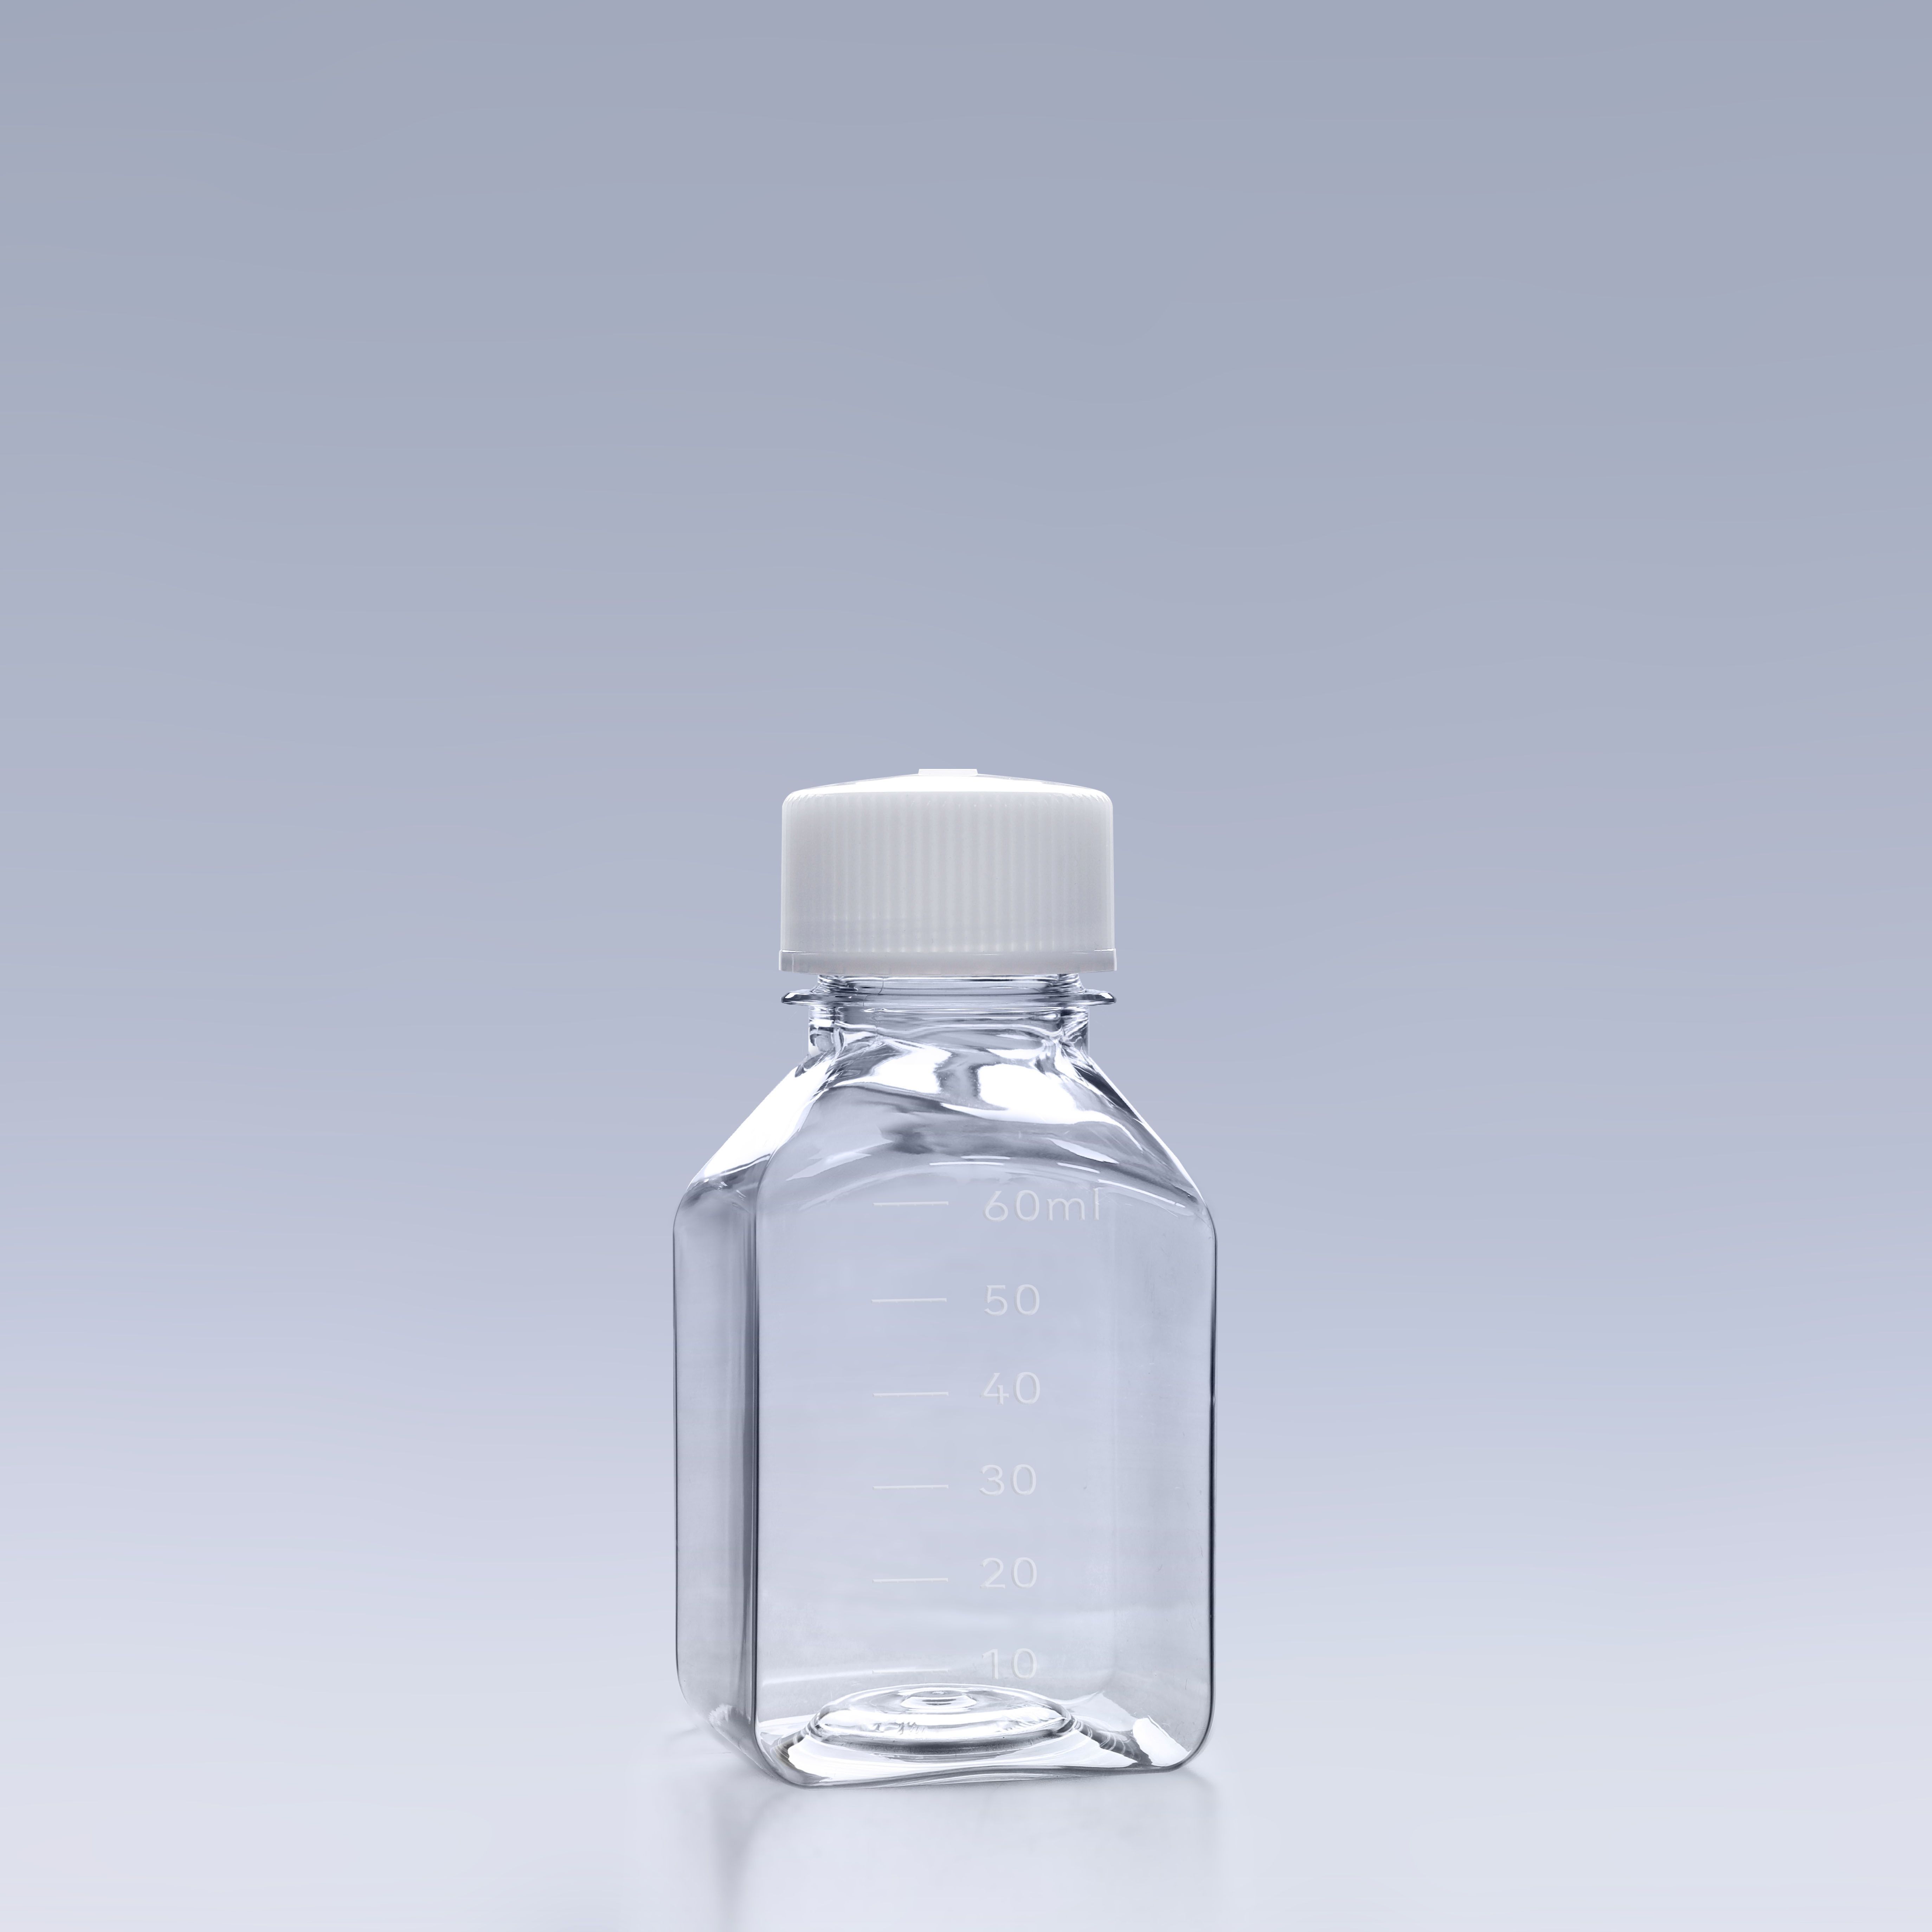 60ml血清瓶-培养基瓶-方形培养基瓶